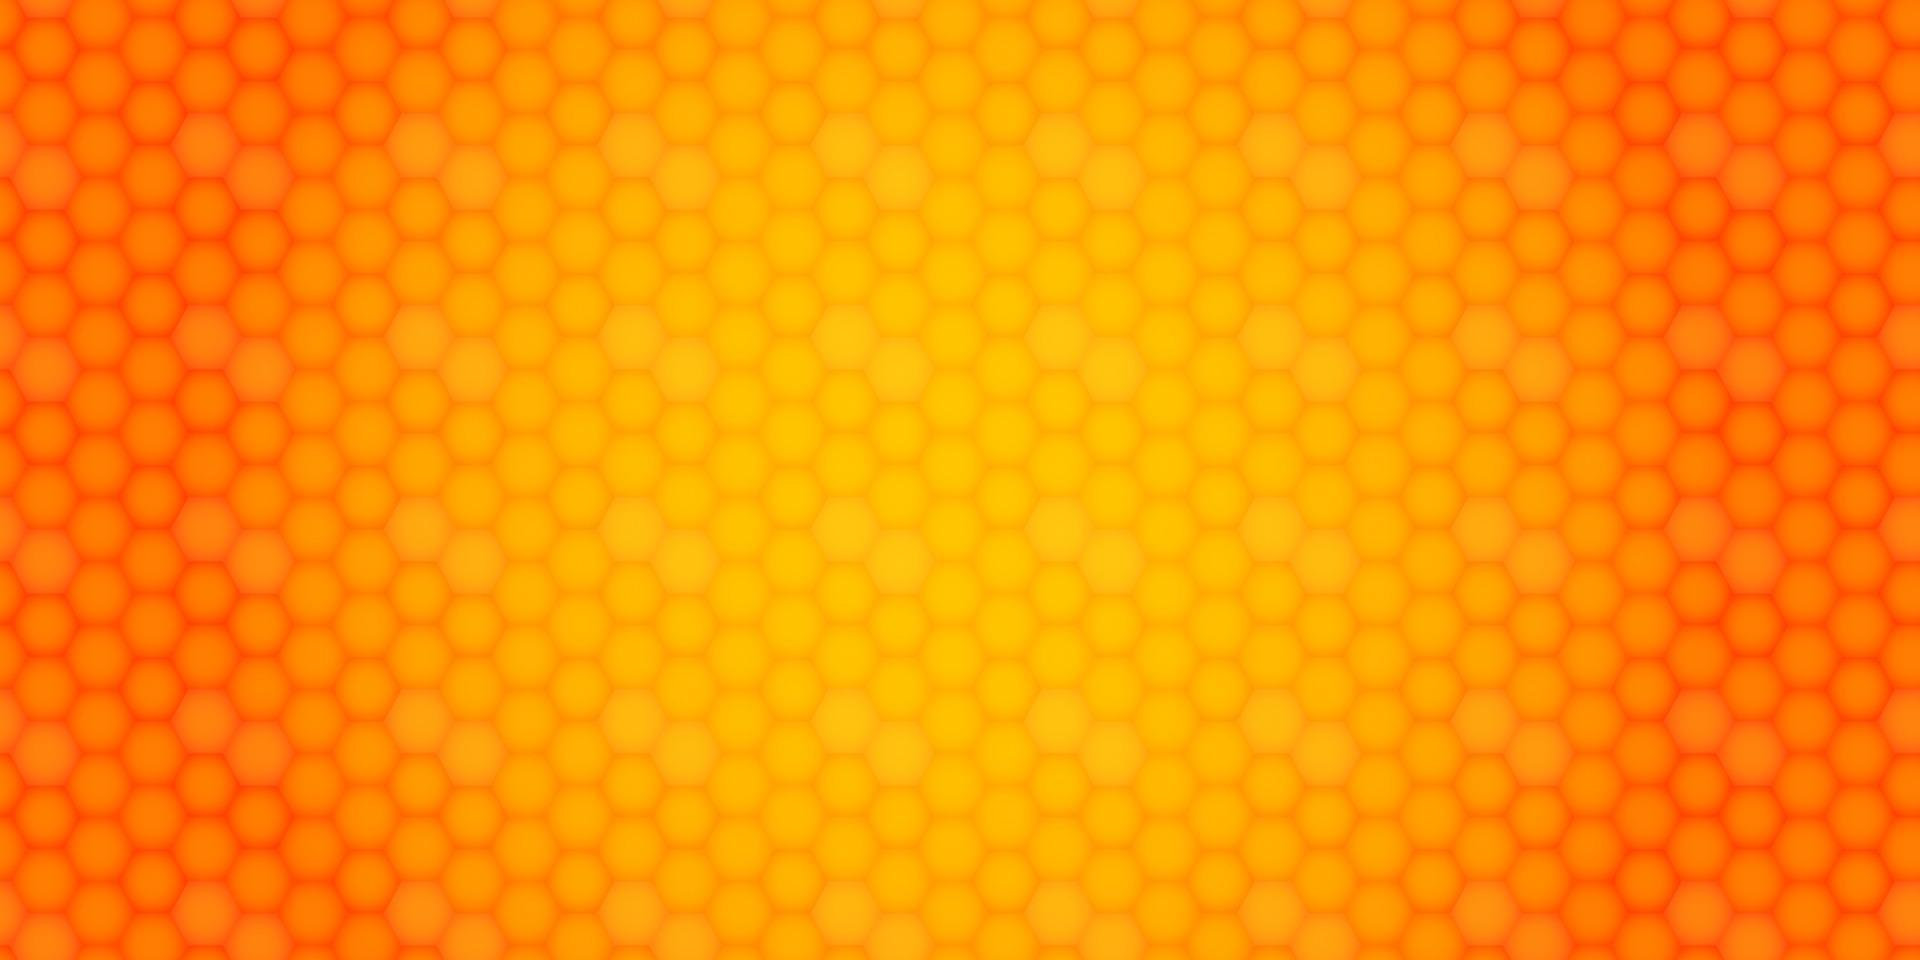 fundo brilhante e elegante do favo de mel. fundo laranja geométrico abstrato para projetos, trabalhos de capa etc. vetor